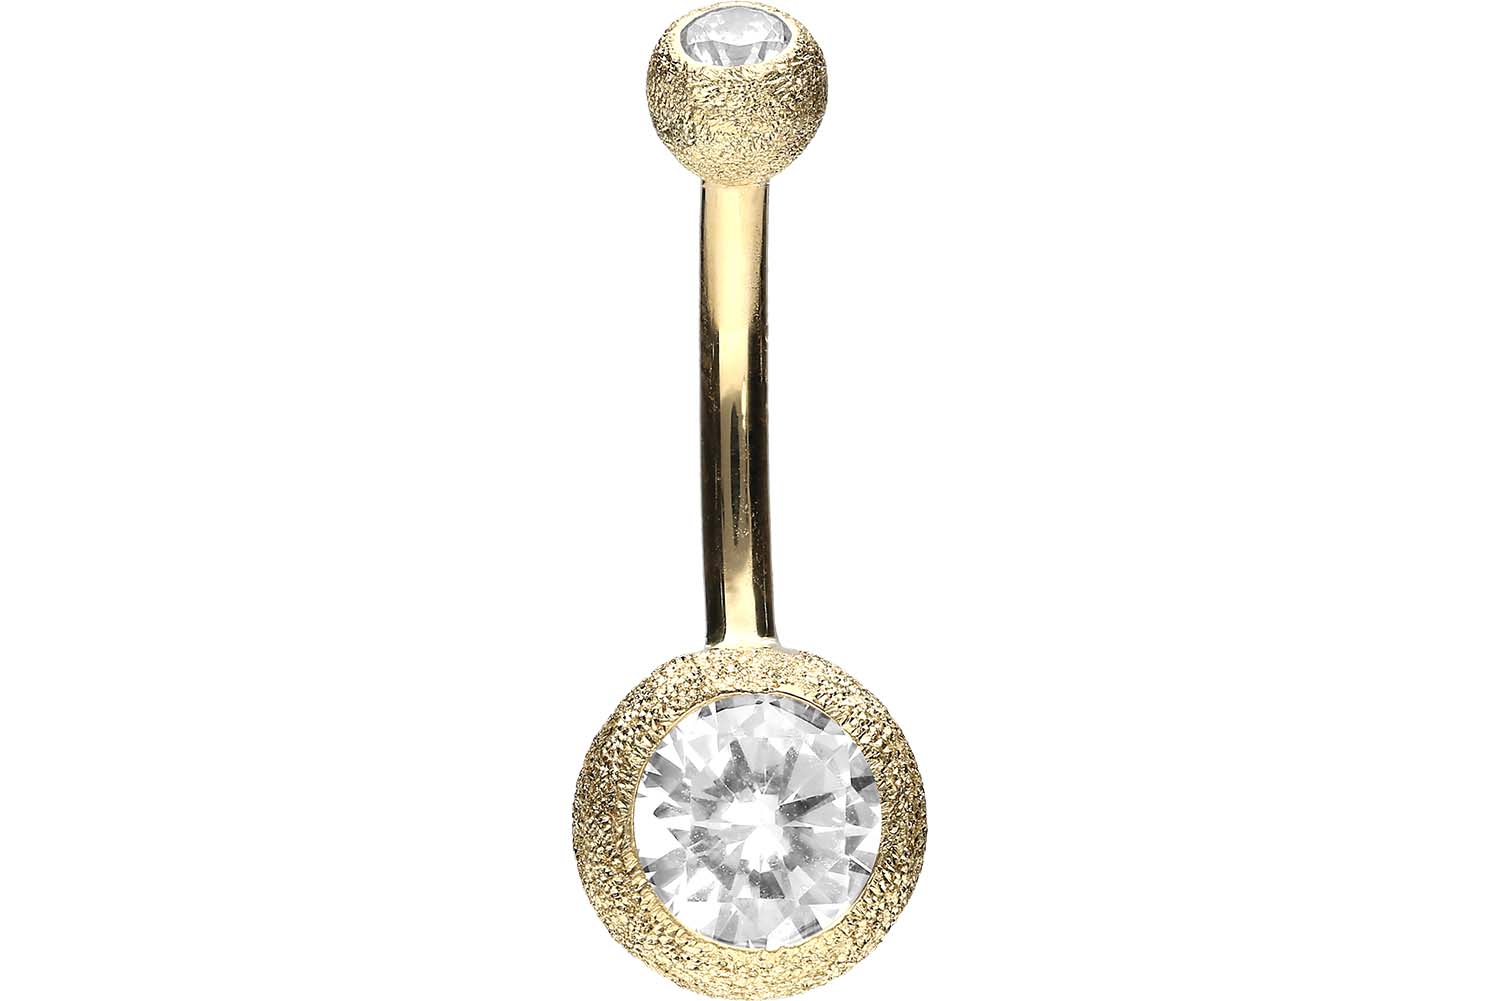 Bauchnabelpiercing 18karat Echtgold Gelbgold Diamantoptik mit zwei Kristallkugeln